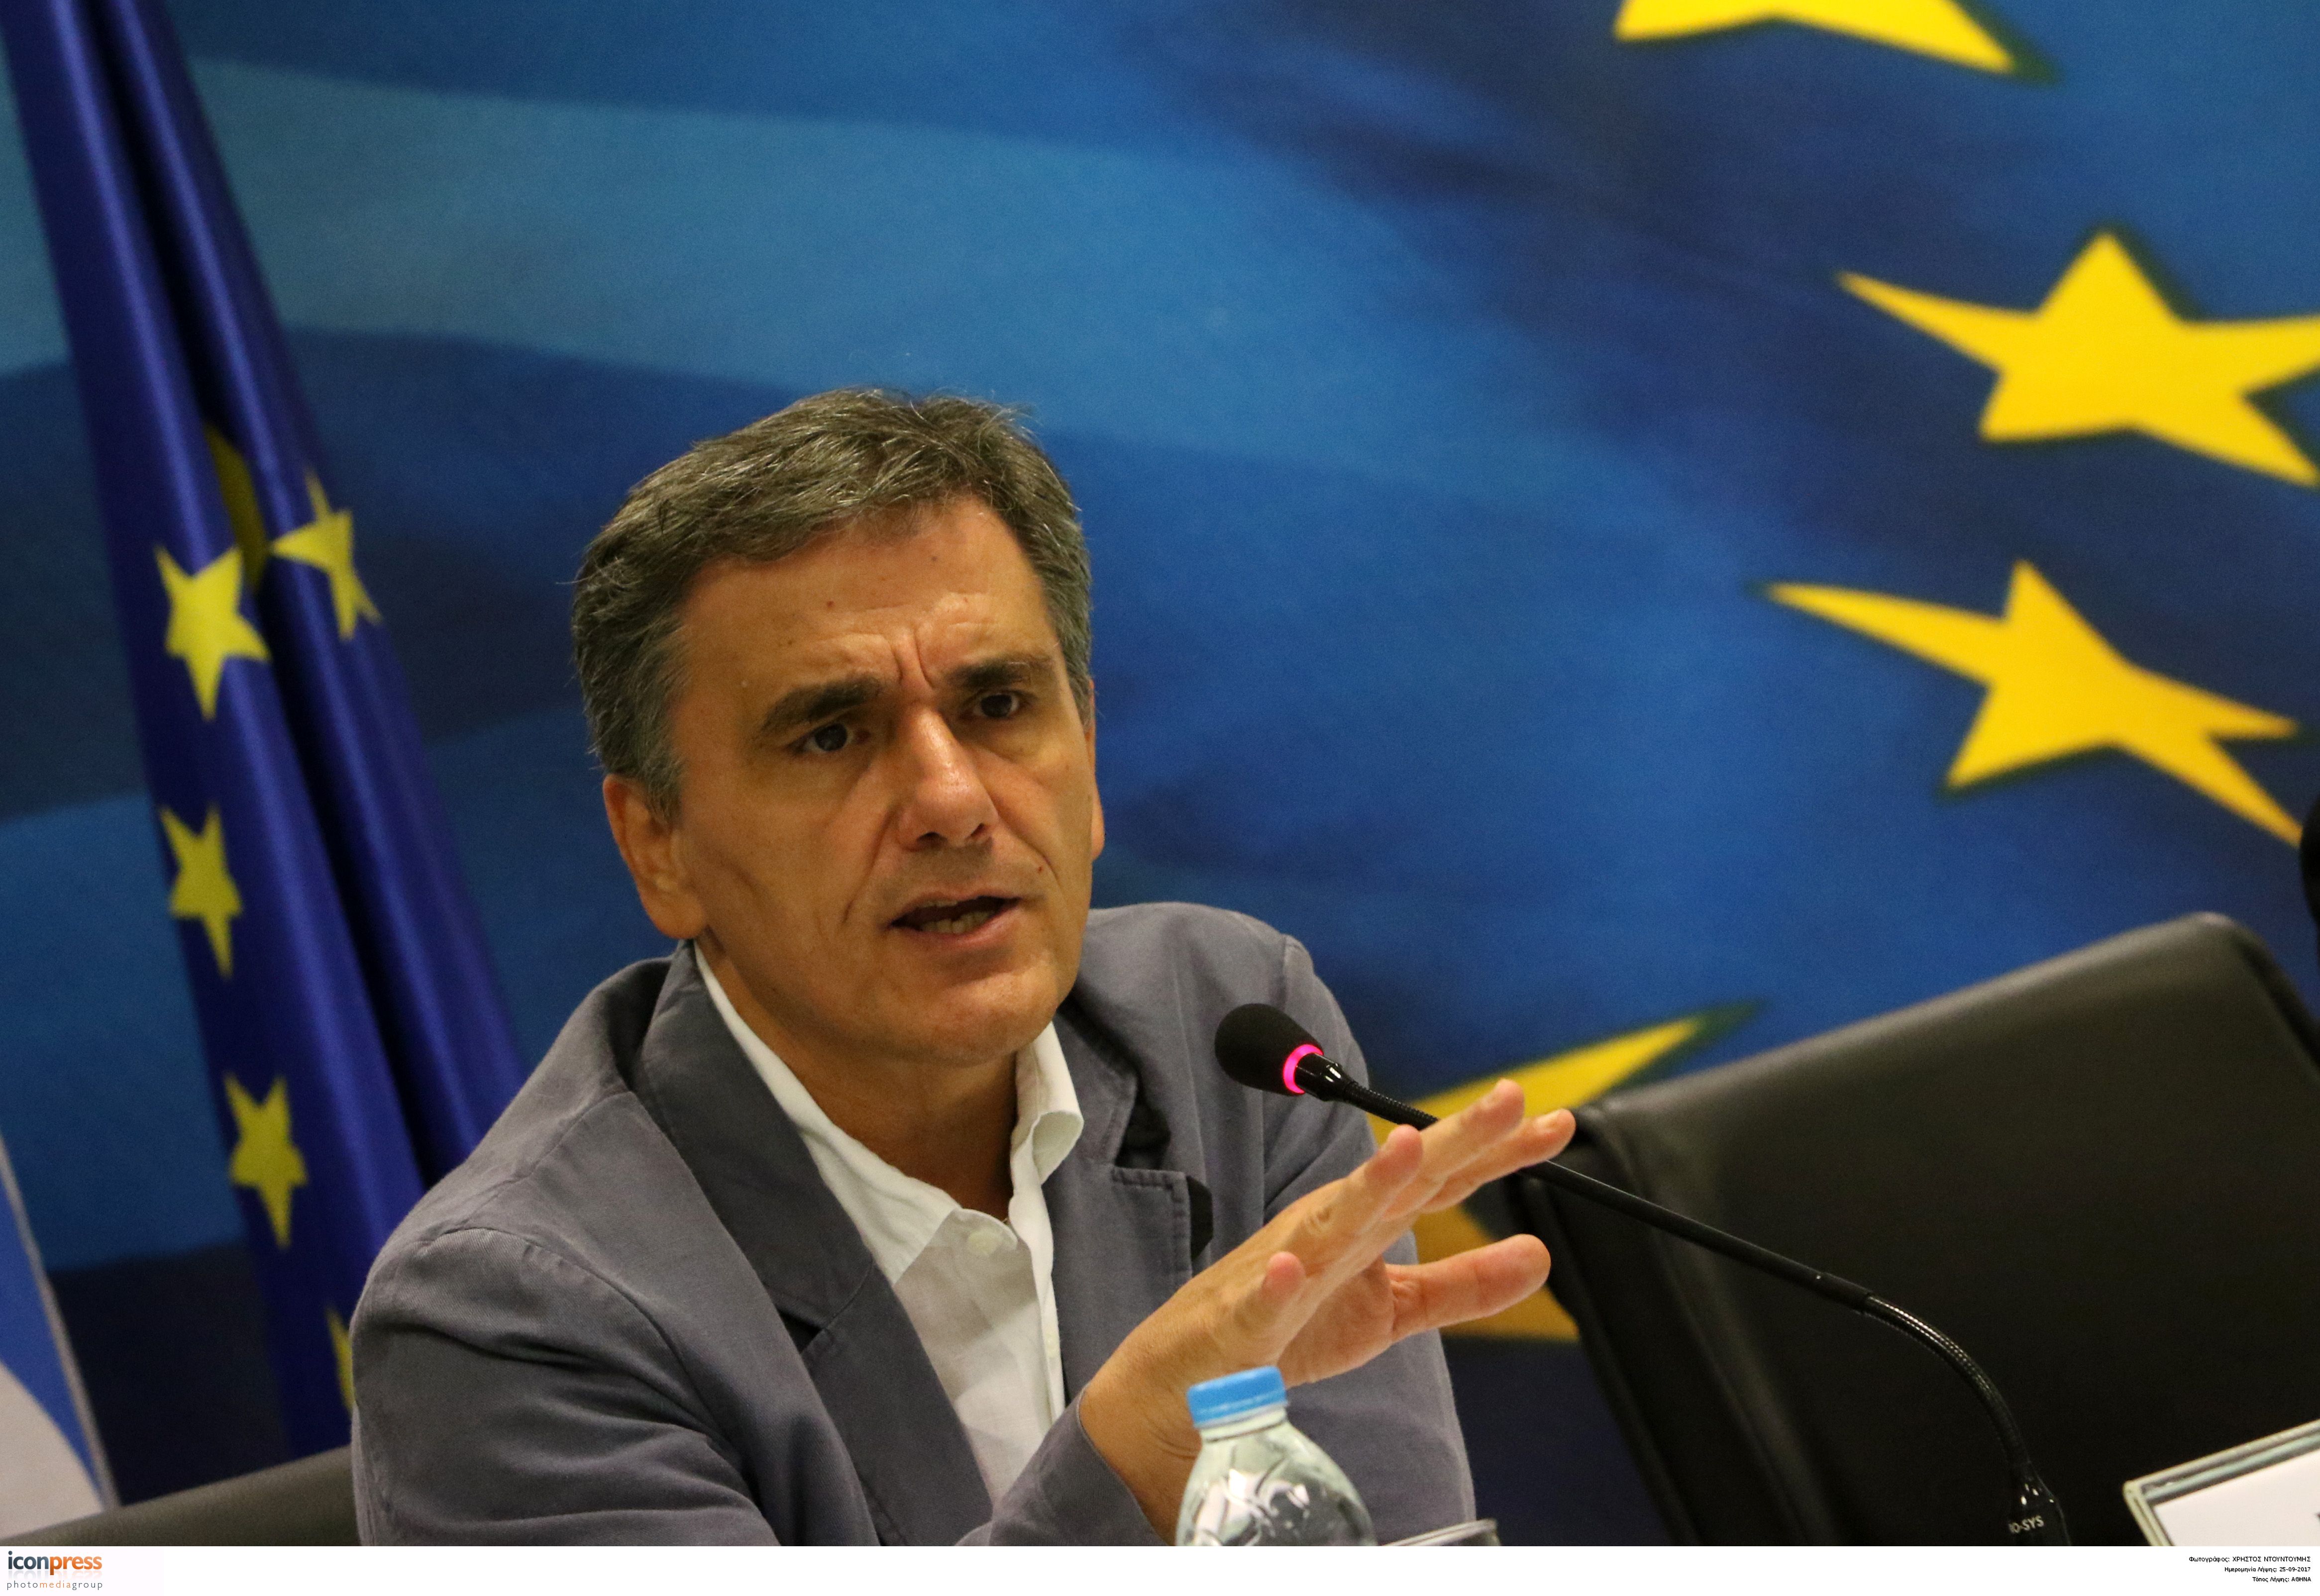 Τσακαλώτος: Η Ελλάδα είναι έτοιμη να σταθεί στα πόδια της